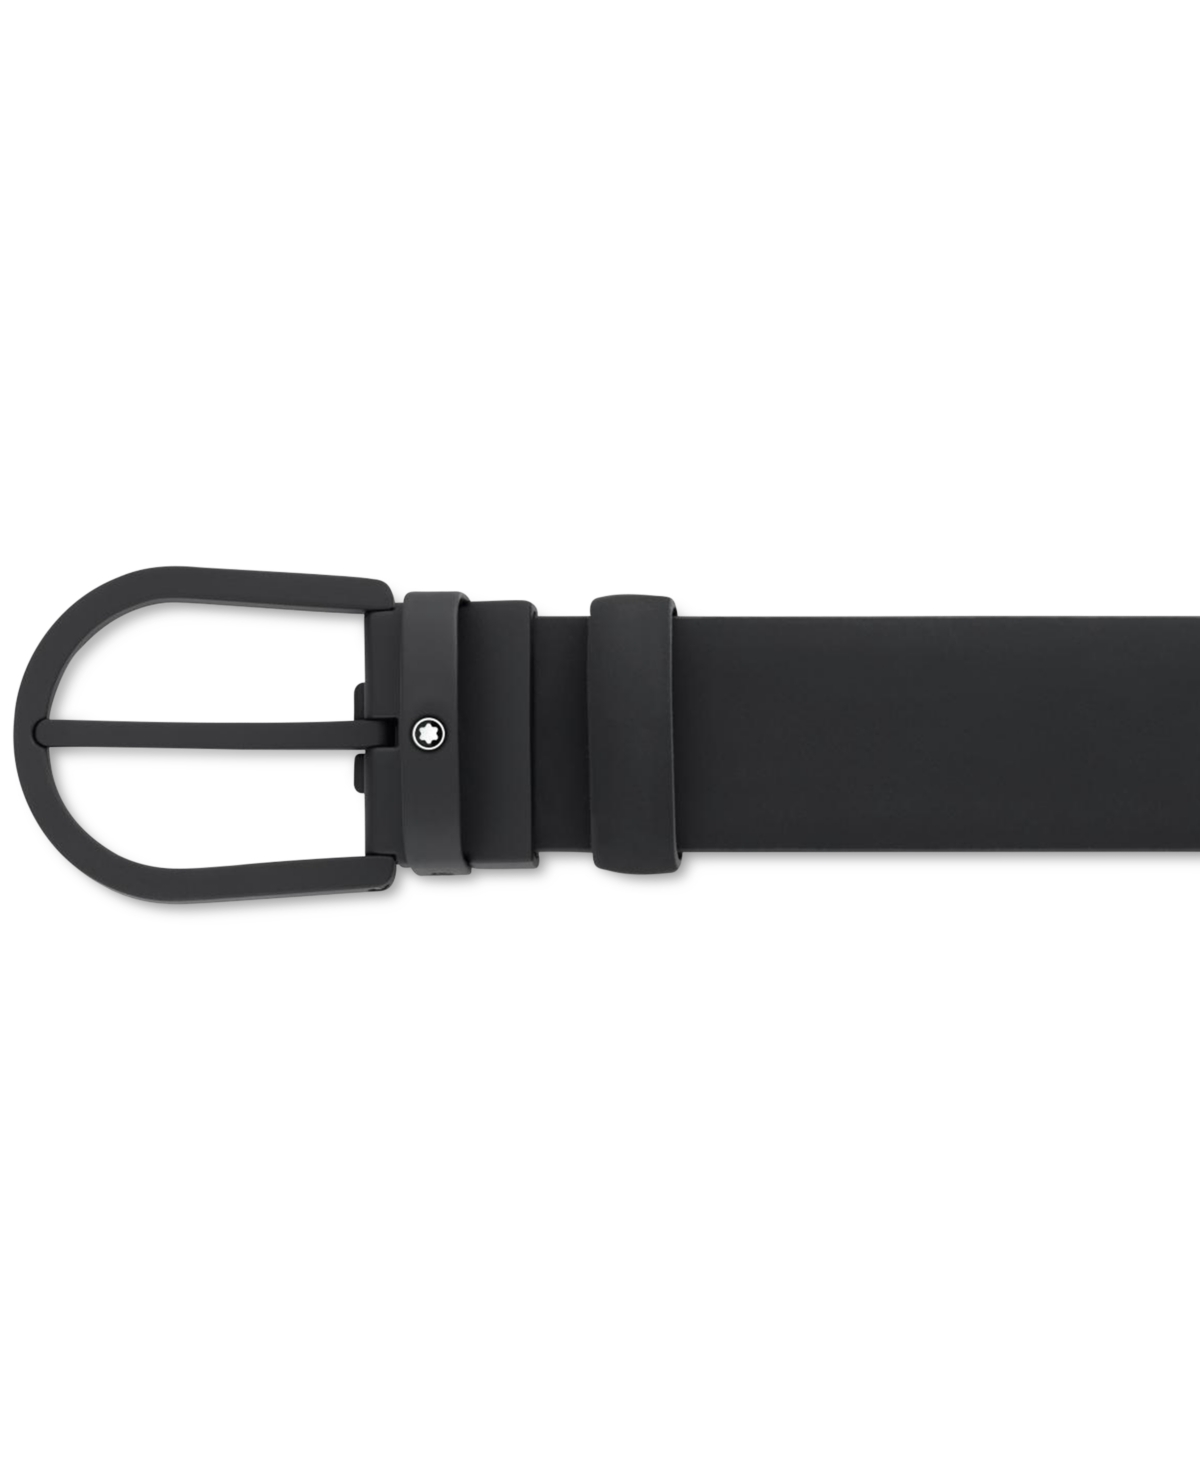 Horseshoe Leather Belt - Black